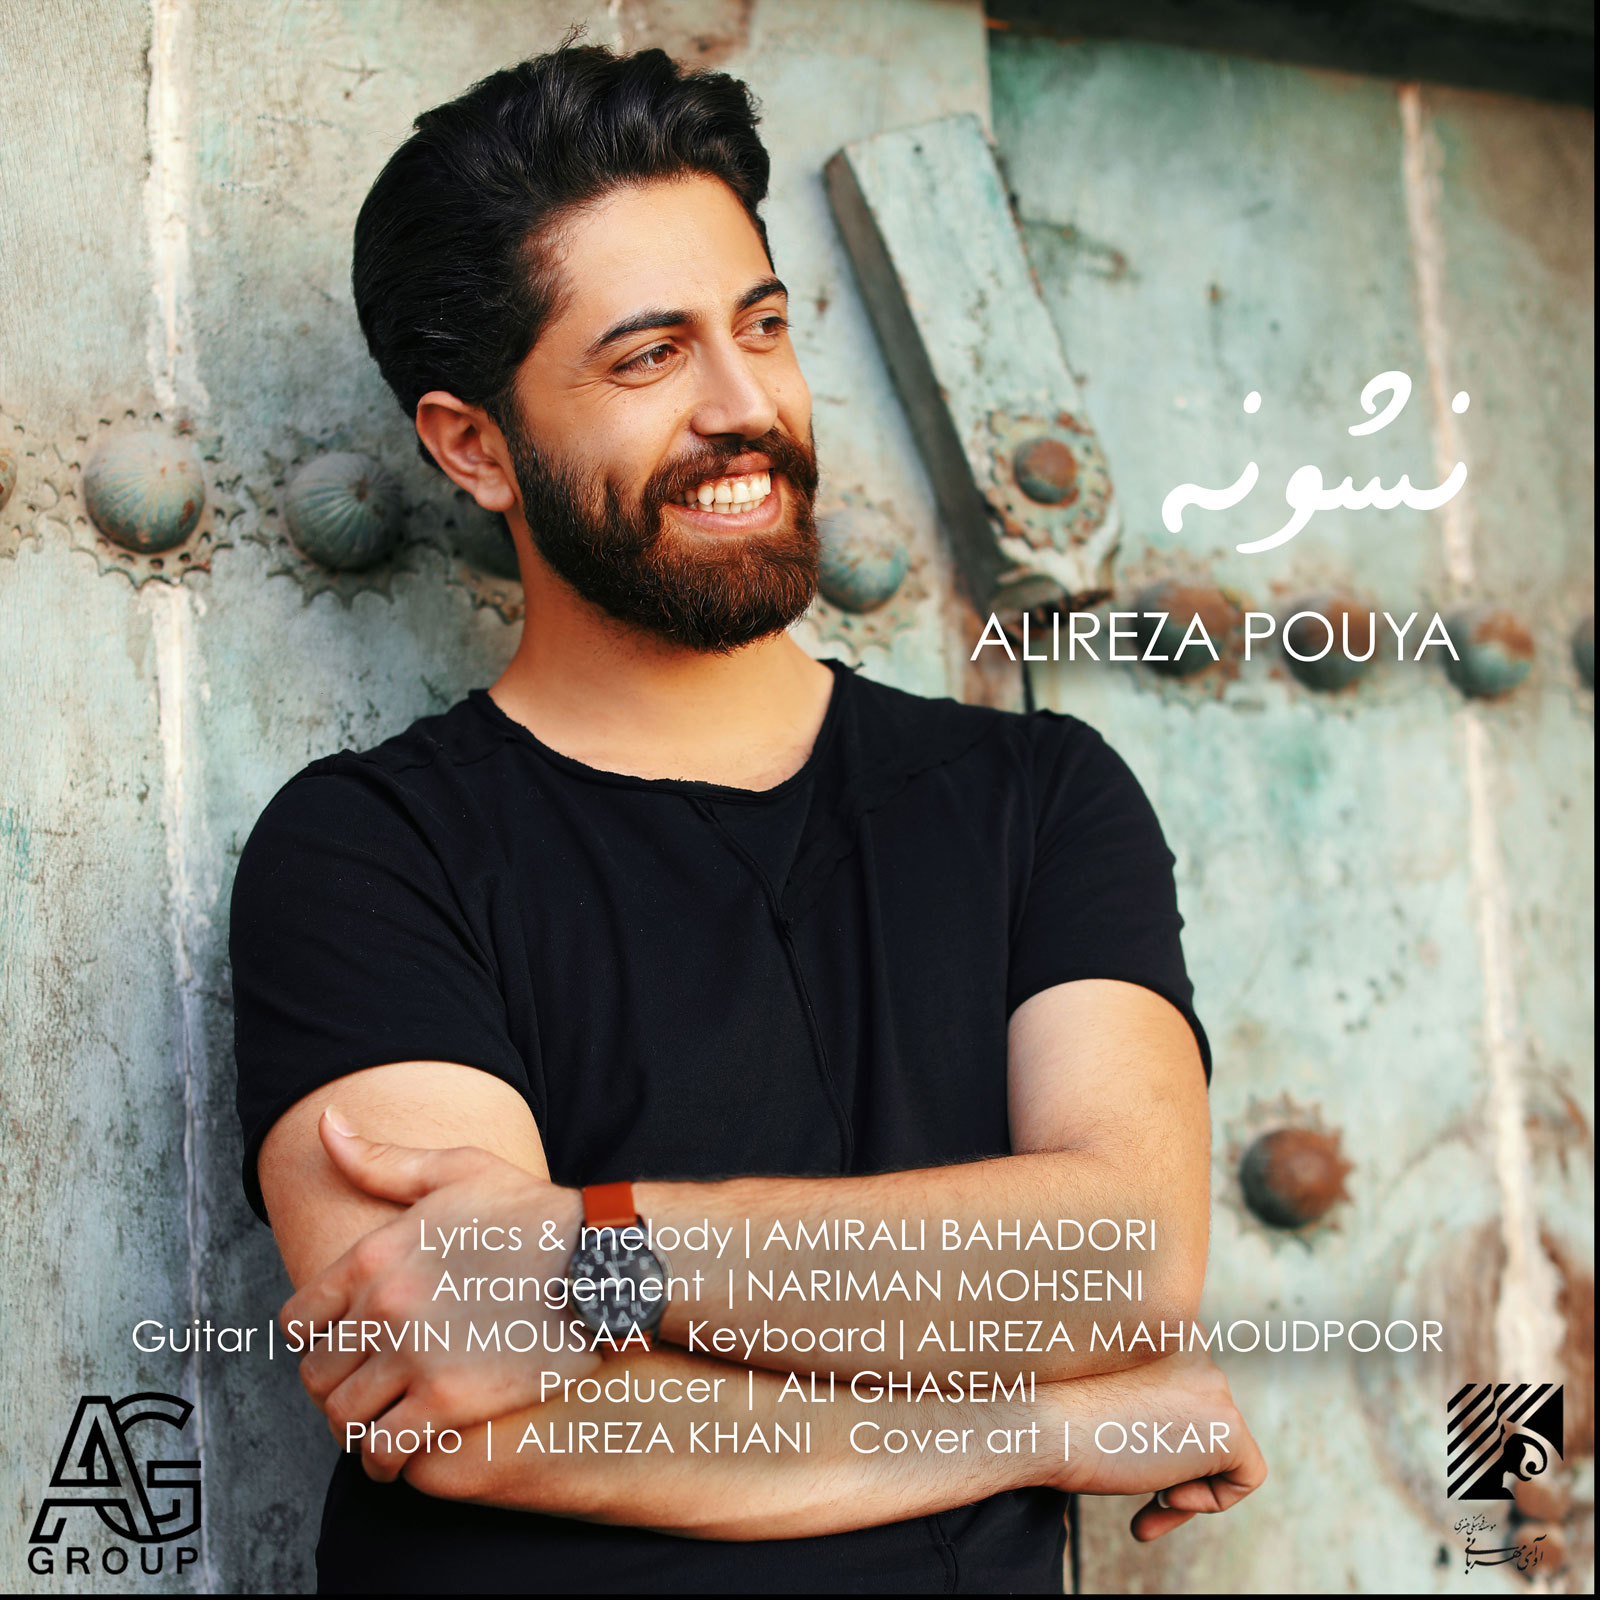  دانلود آهنگ جدید علیرضا پویا - نشونه | Download New Music By Alireza Pouya - Neshouneh